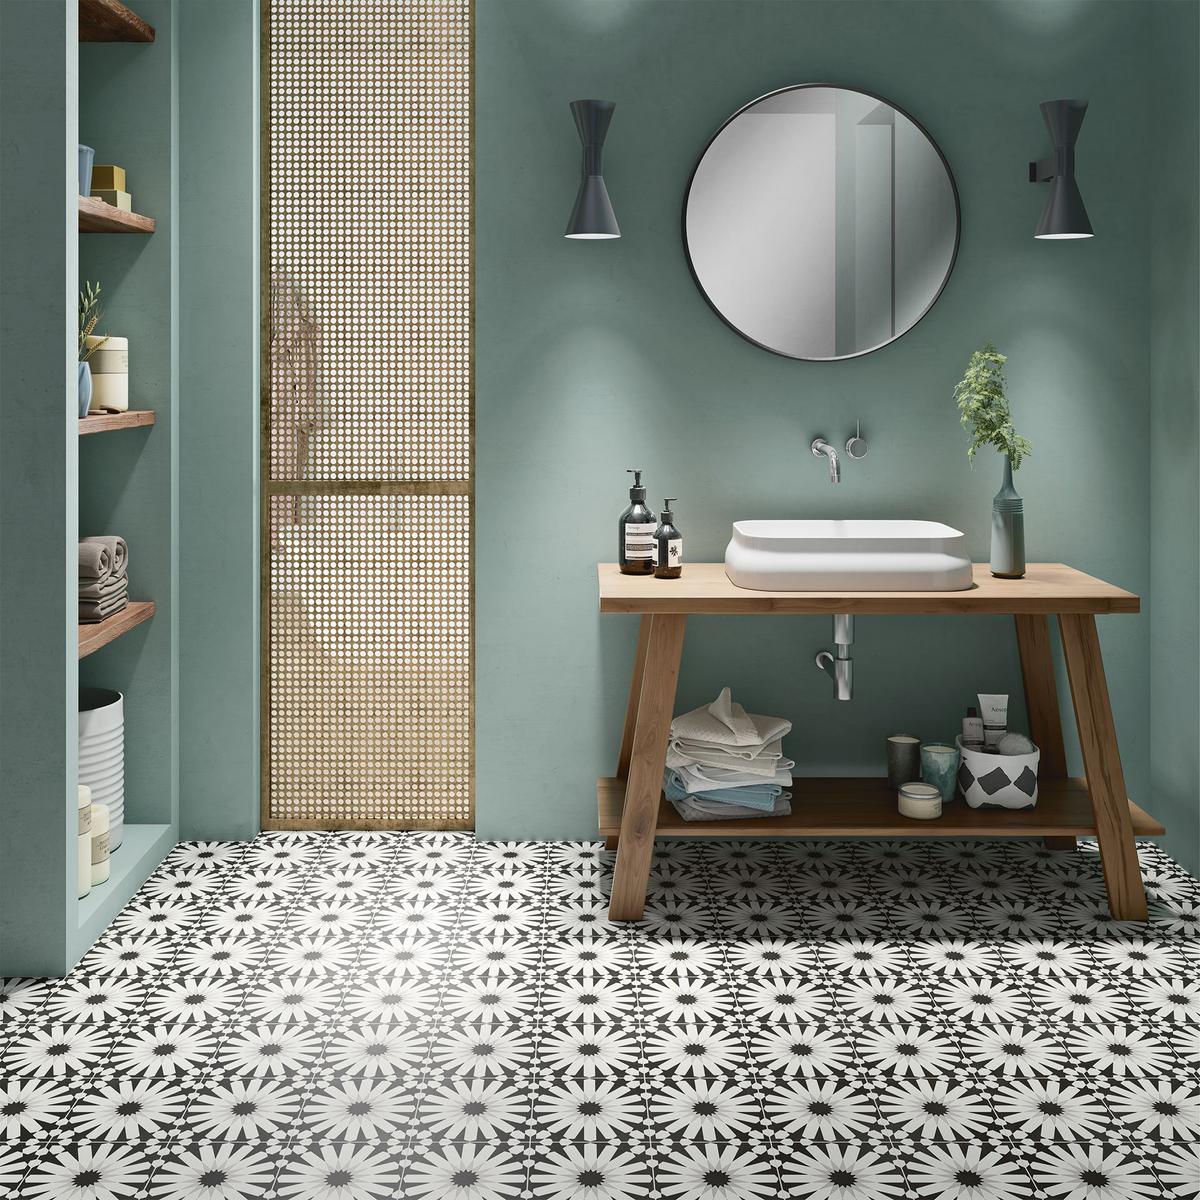 Carreau de ciment noir et blanc à motifs 20x20 cm dans une salle de bain vert deau avec lavabo, miroir et accessoires en bois